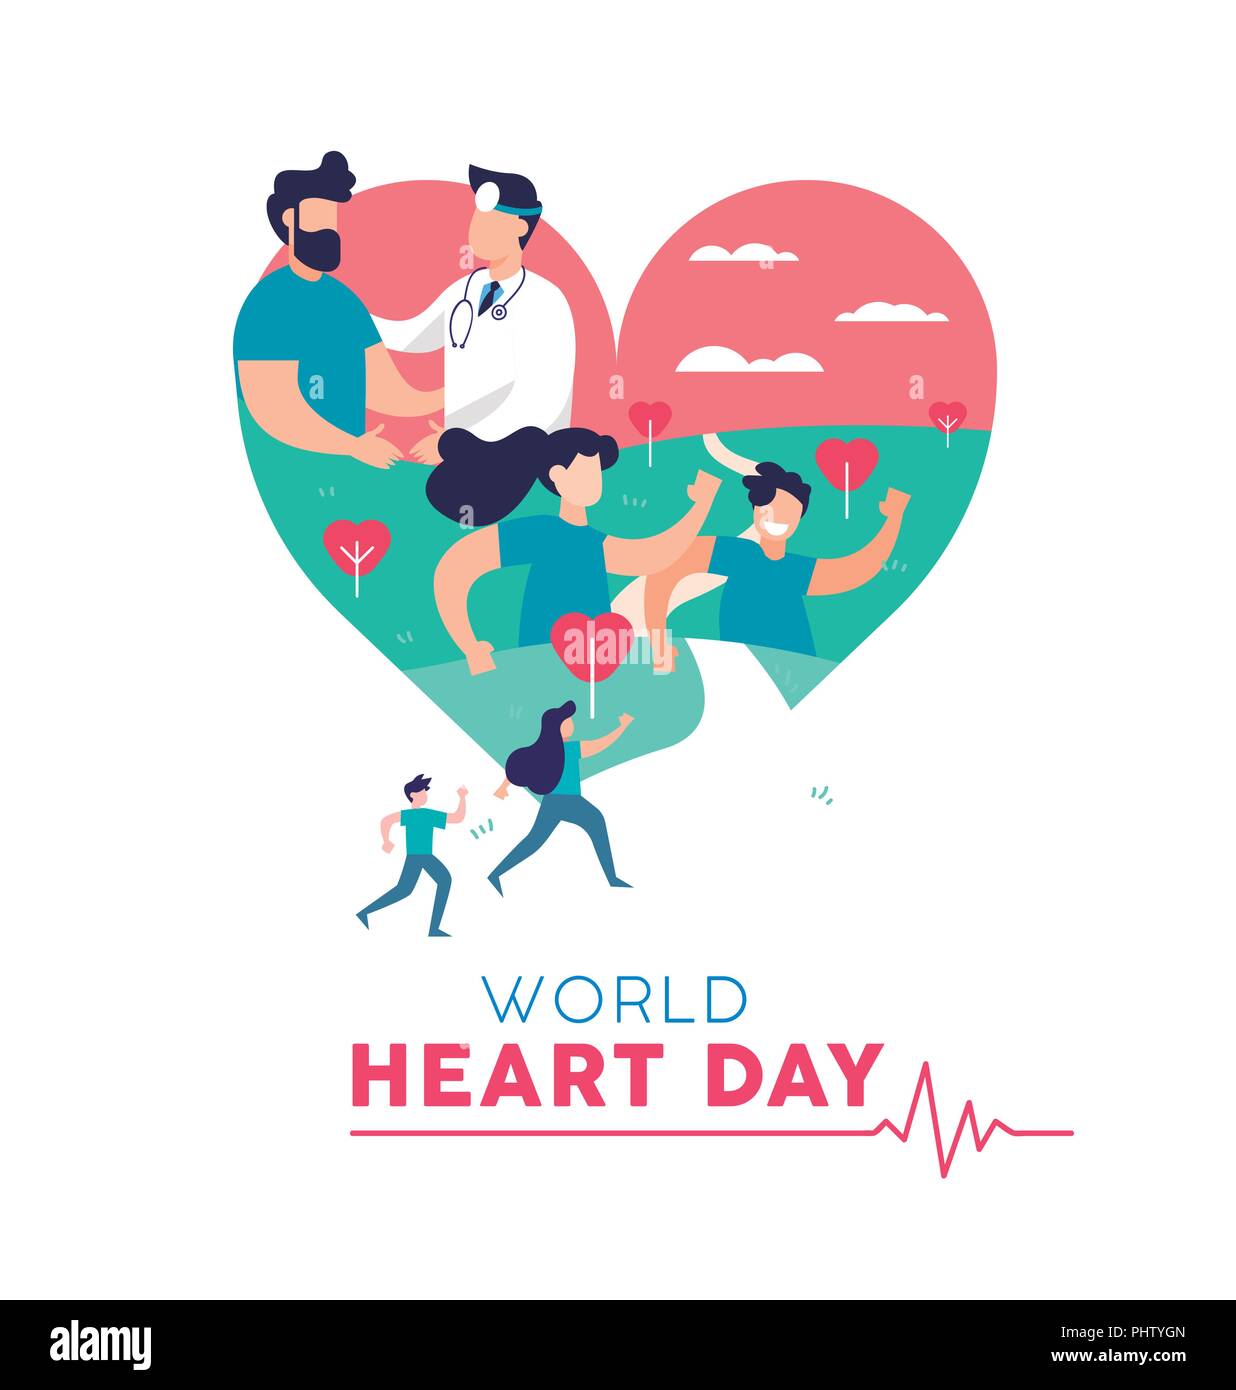 World Heart Day Abbildung: Konzept, Gesundheit Bewusstsein. Leute, die für die Prävention und Arzt mit Patienten. EPS 10 Vektor. Stock Vektor